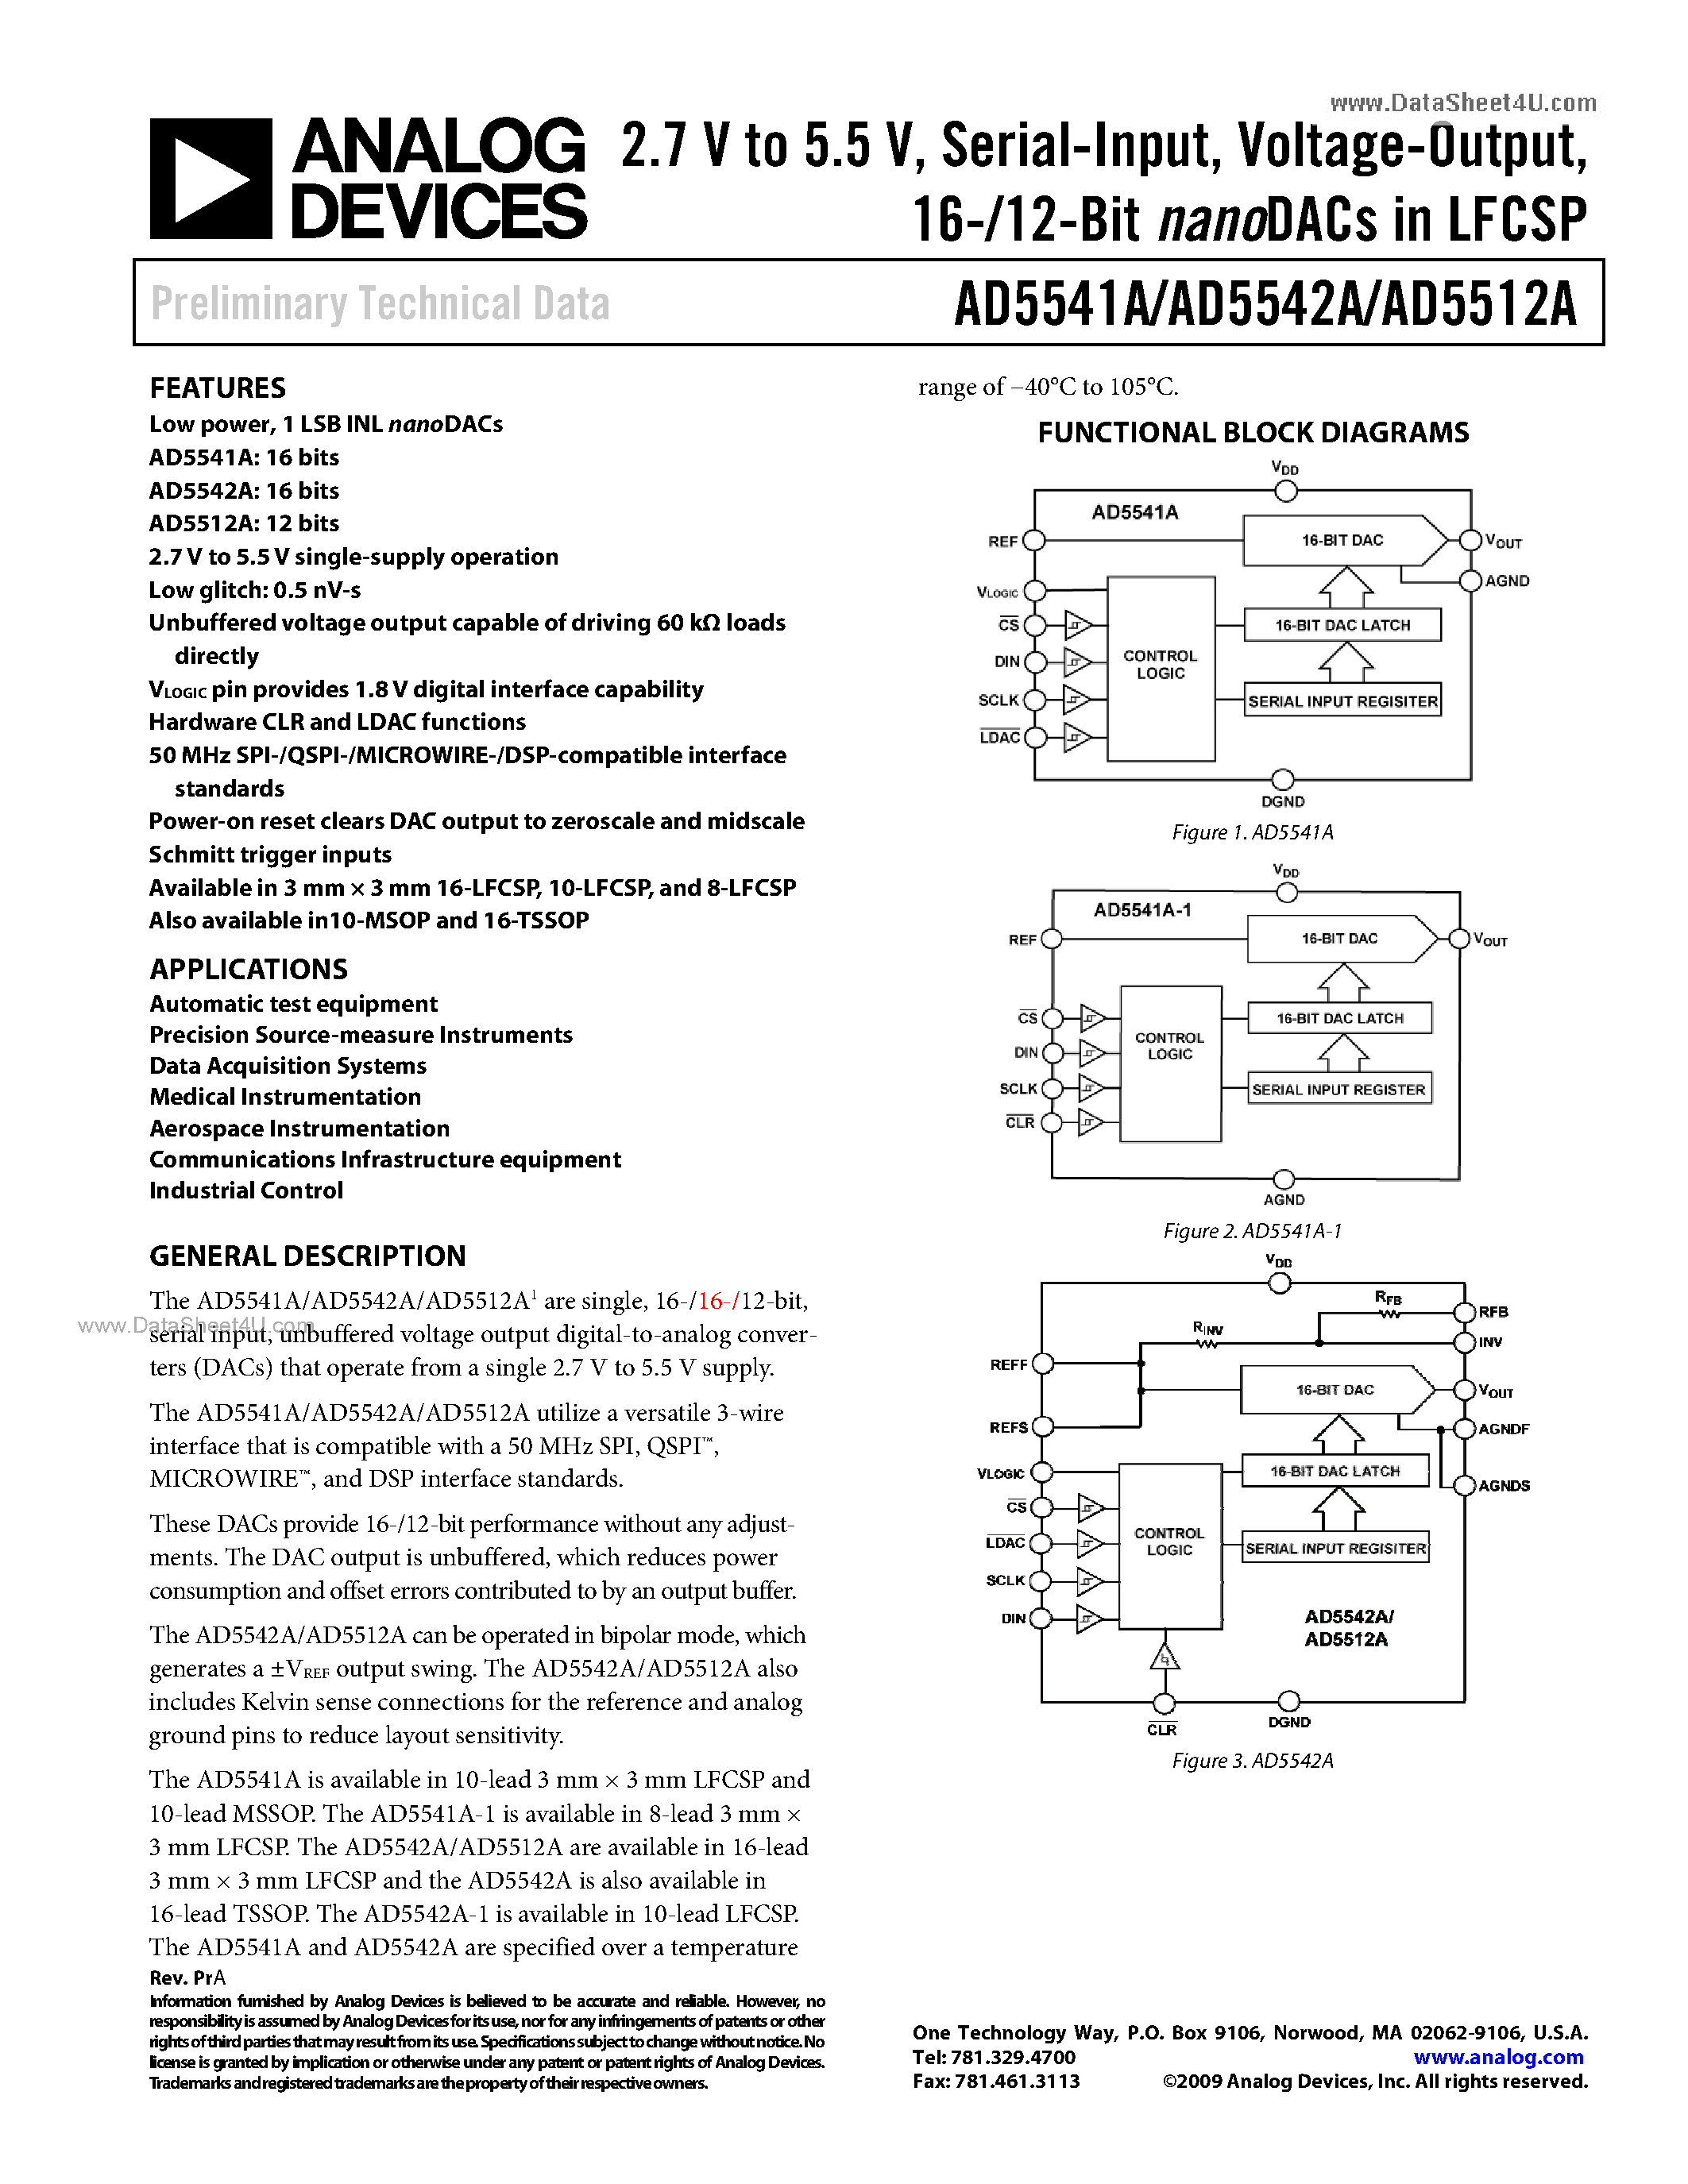 Даташит AD5512A - (AD5512A - AD5542A) 16-/12-Bit NanoDAC страница 1